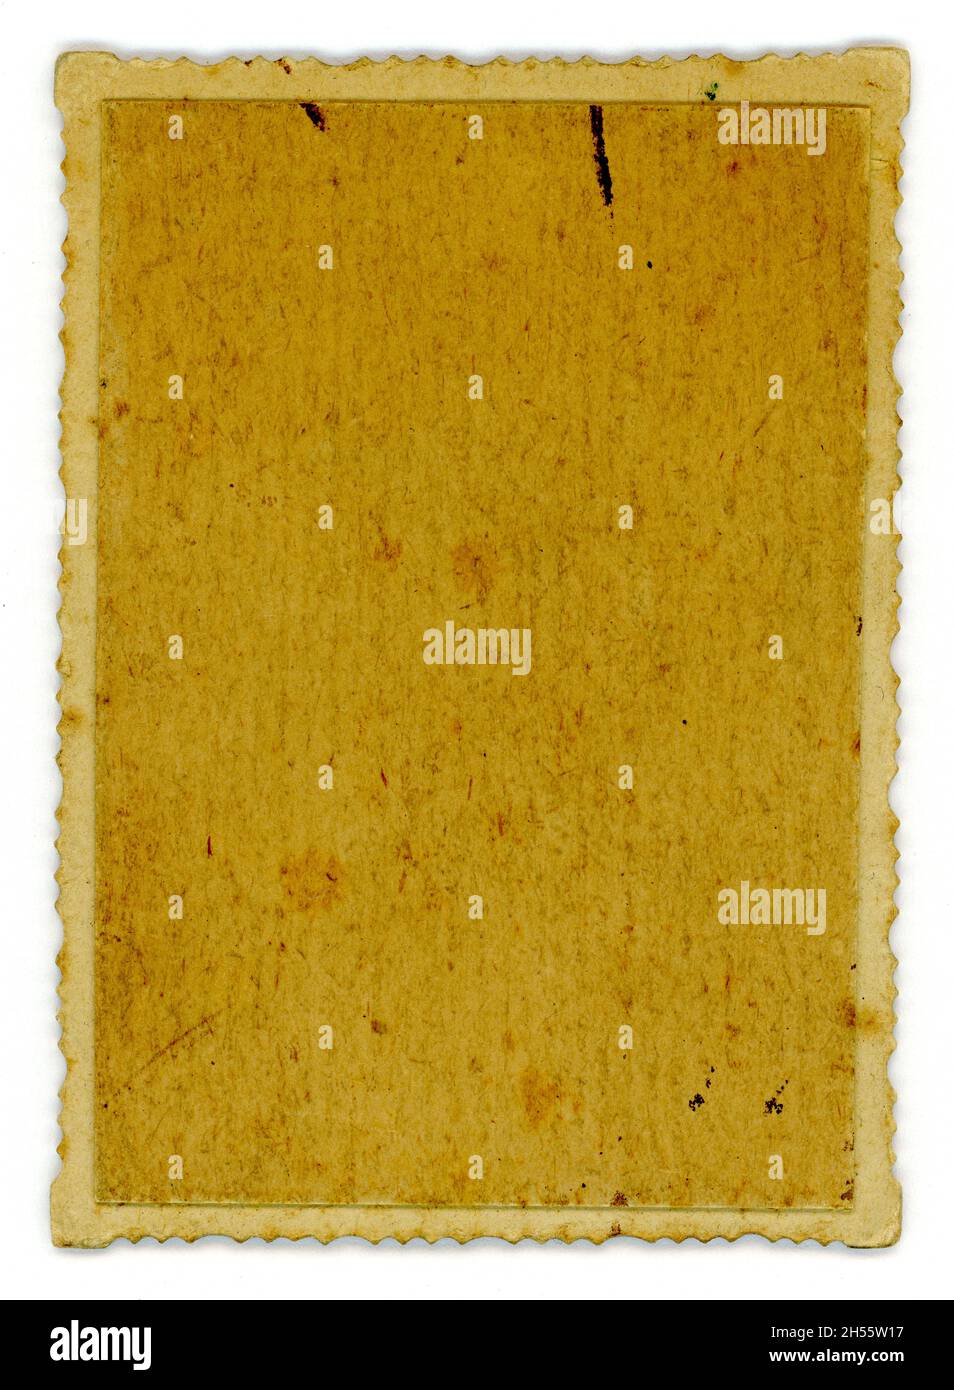 Rückseite einer Miniatur-Fotografie aus der Zeit Edwardians, Halterung aus Karton, mit strukturiertem Papier mit Holzfasern, Rand mit Wellenschliff, Großbritannien um 1900 oder 1901 Stockfoto